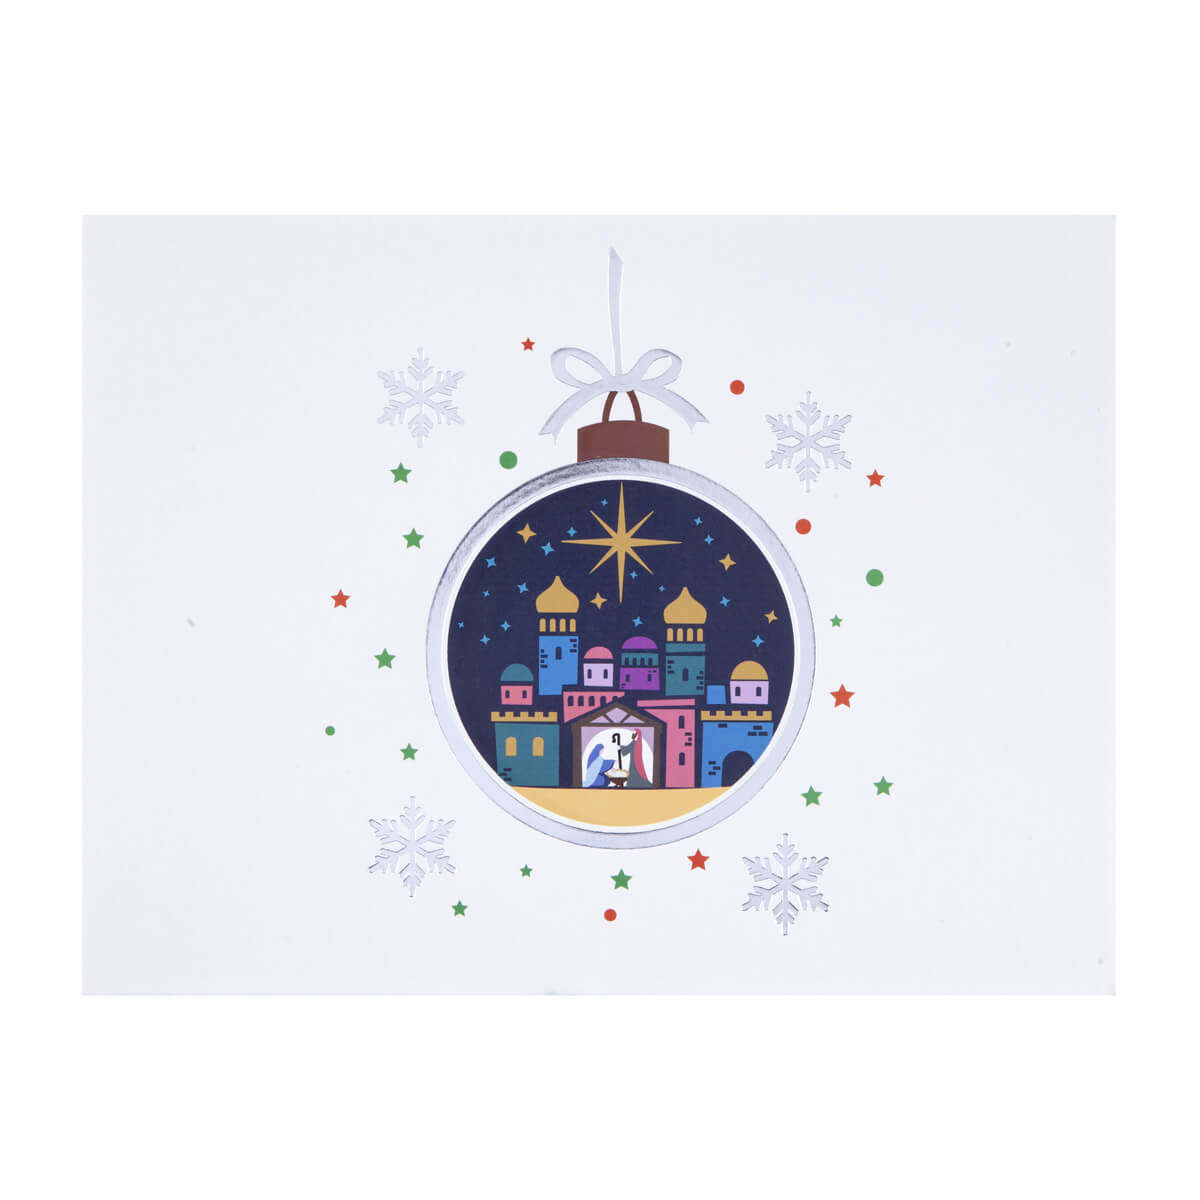 Bethlehem Nativity Pop Up Christmas Card - Close Up Image On White Background